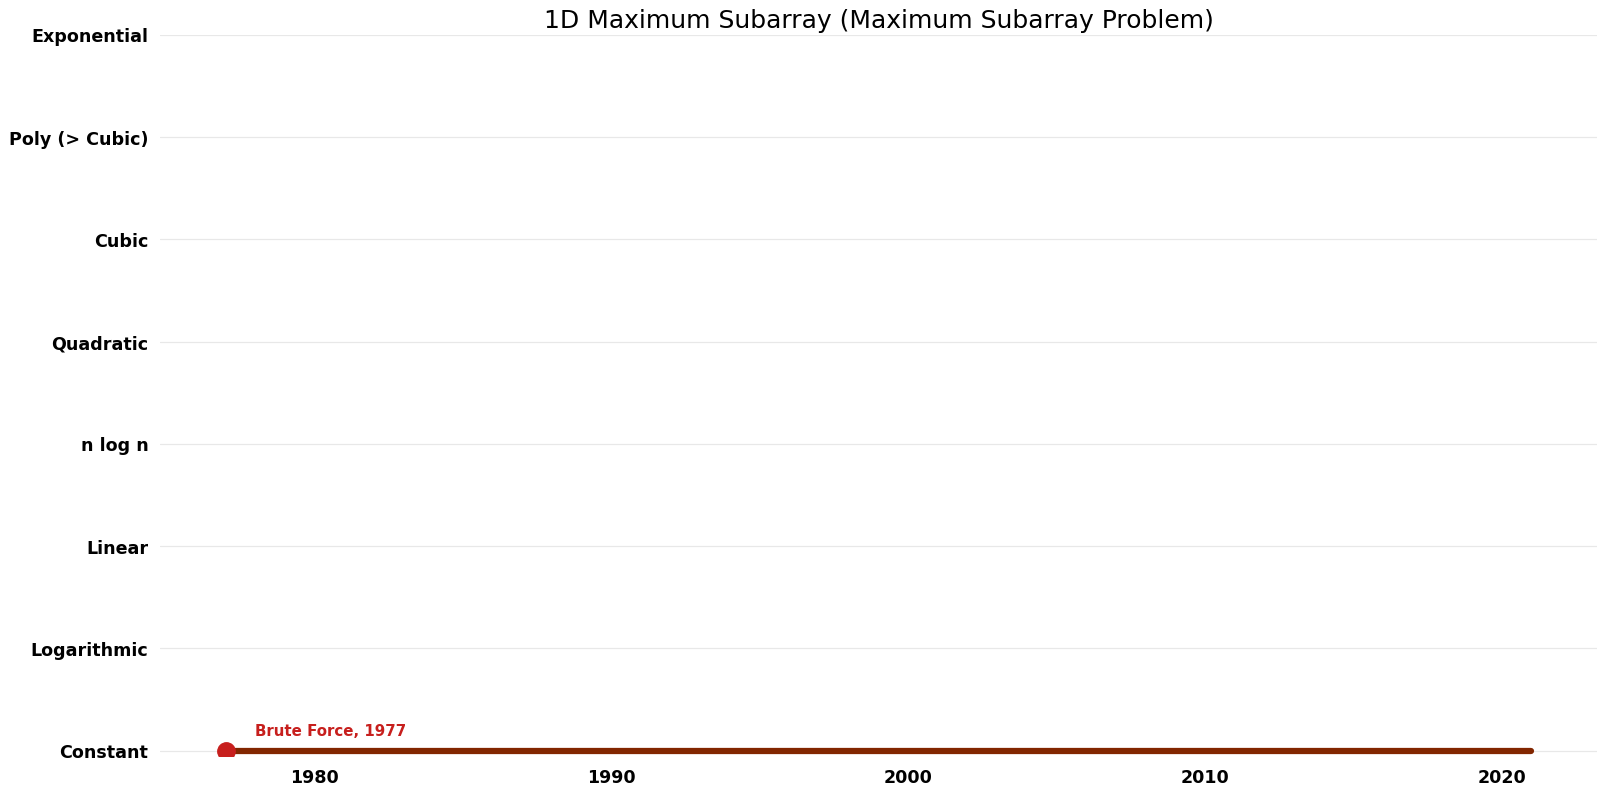 File:Maximum Subarray Problem - 1D Maximum Subarray - Space.png